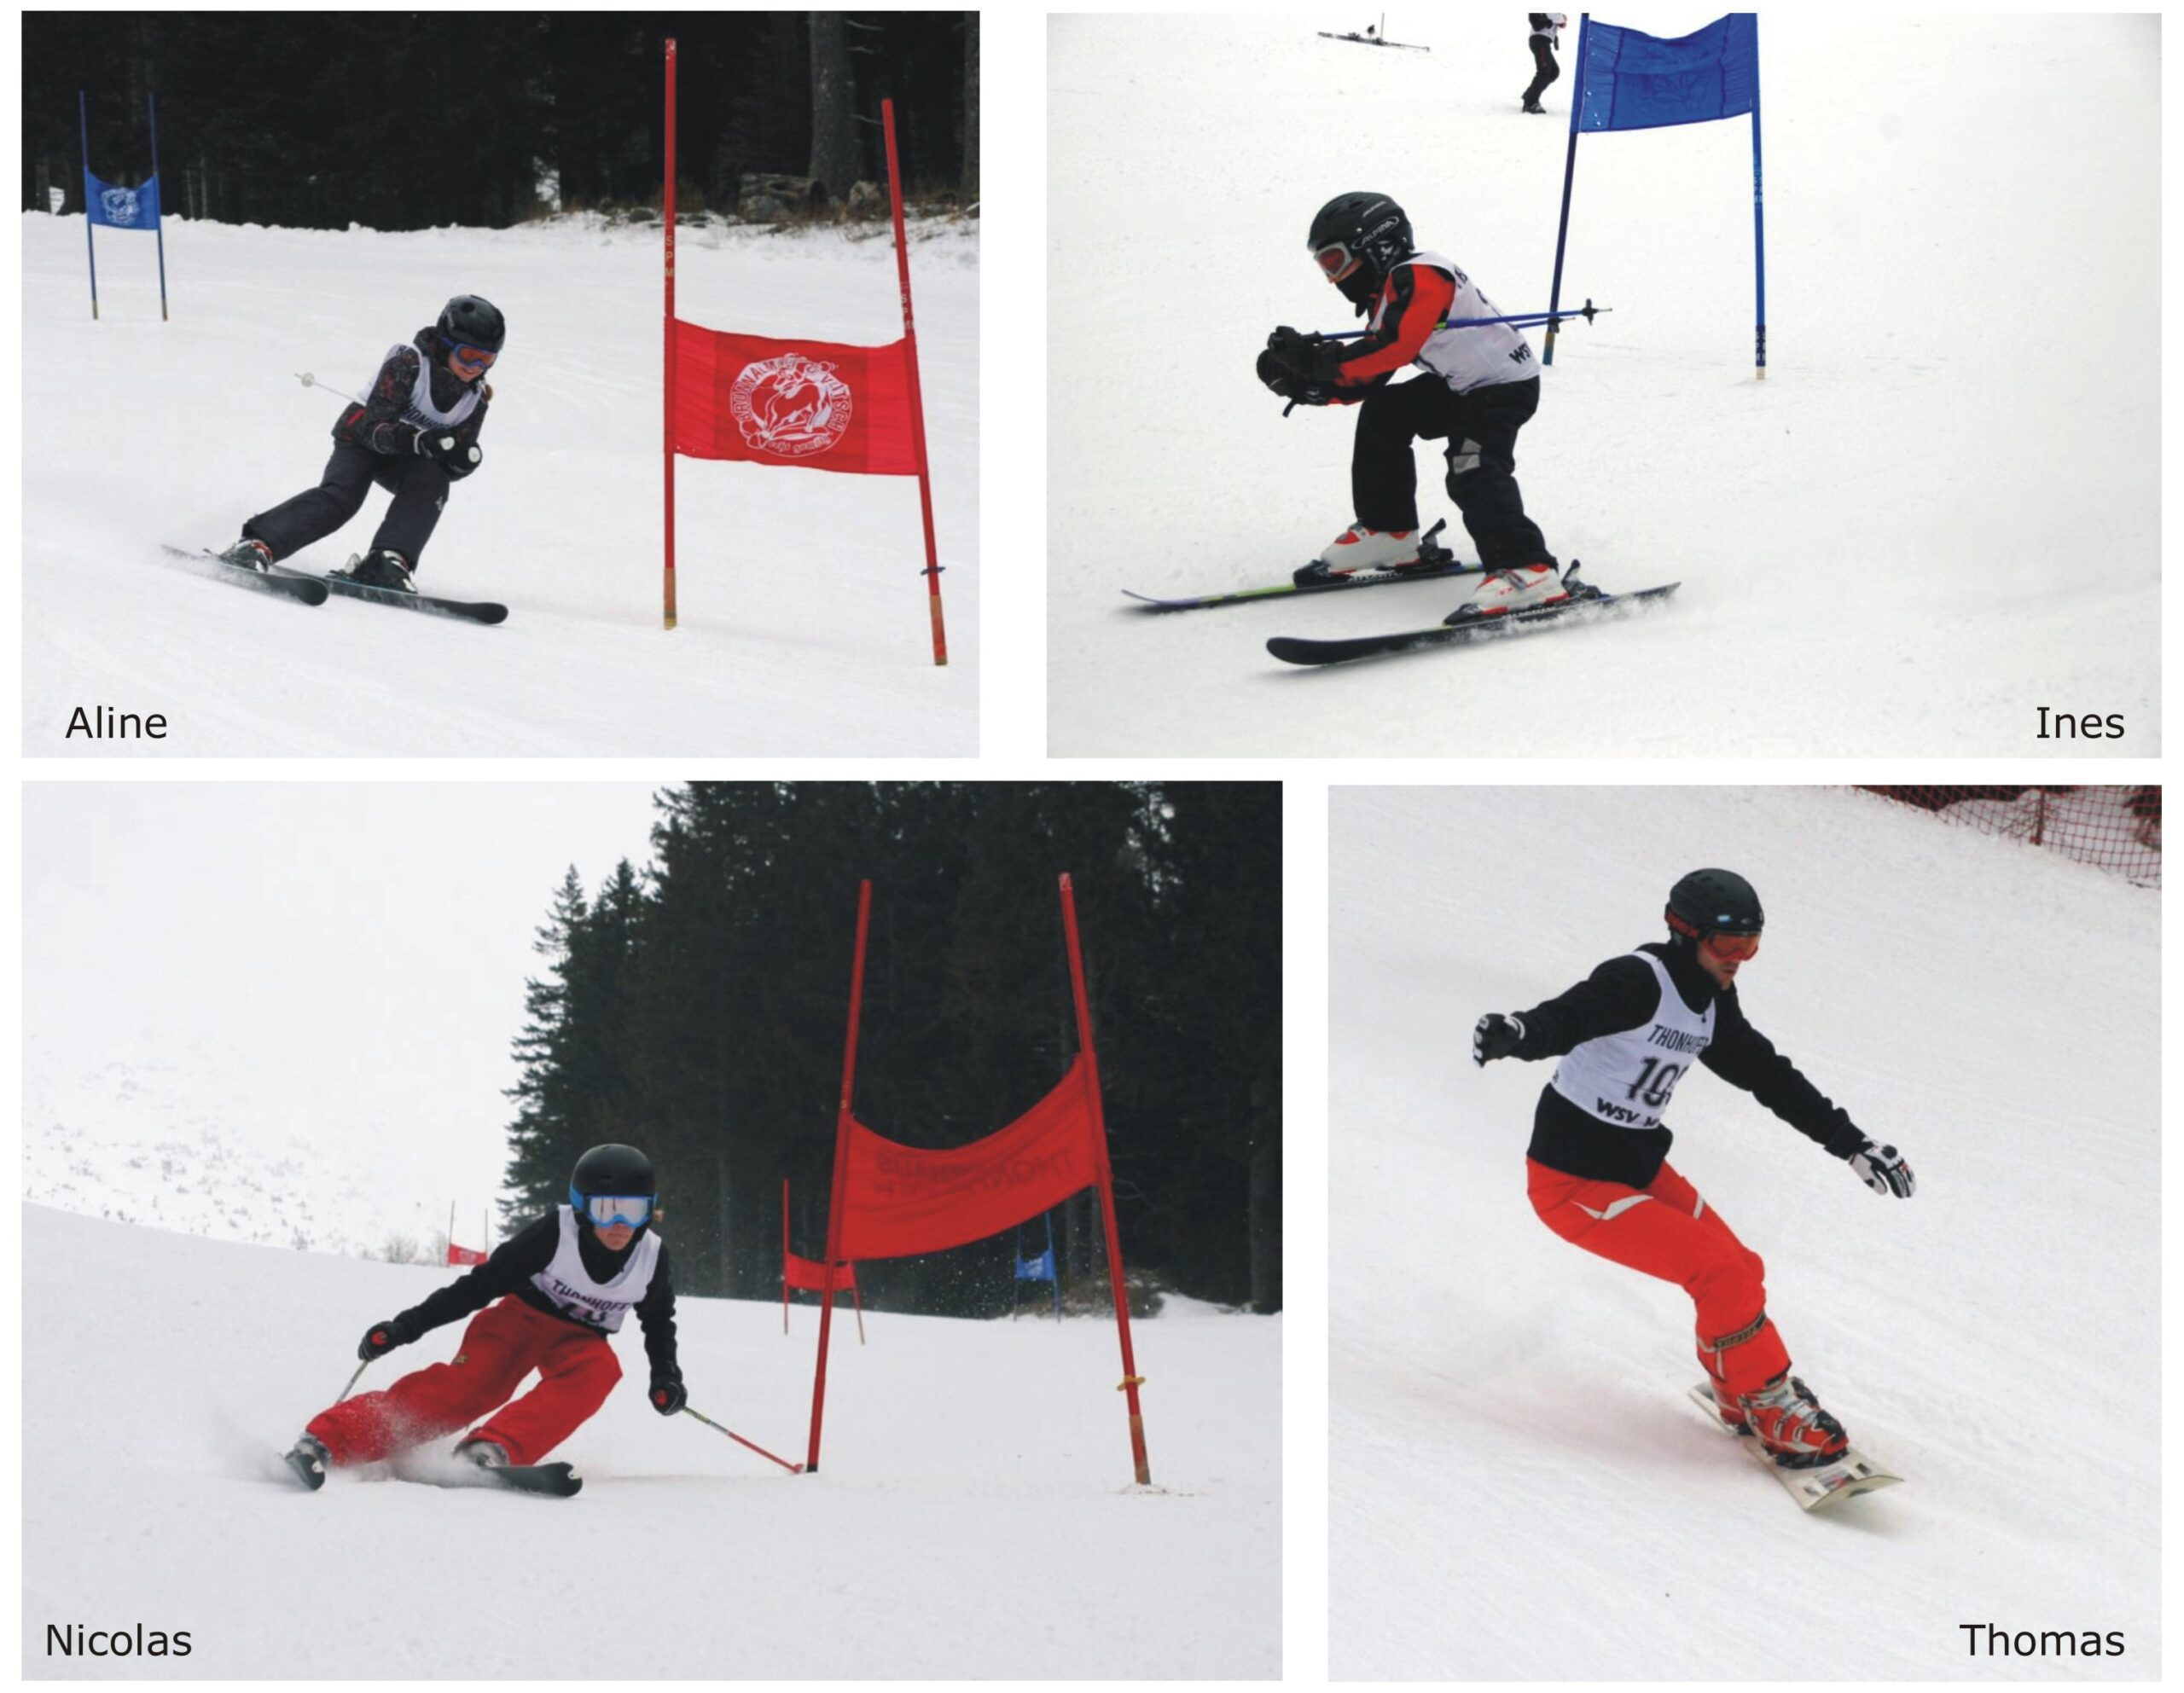 20110220 - bildergalerie - schi- und snowboardmeisterschaften_seite2